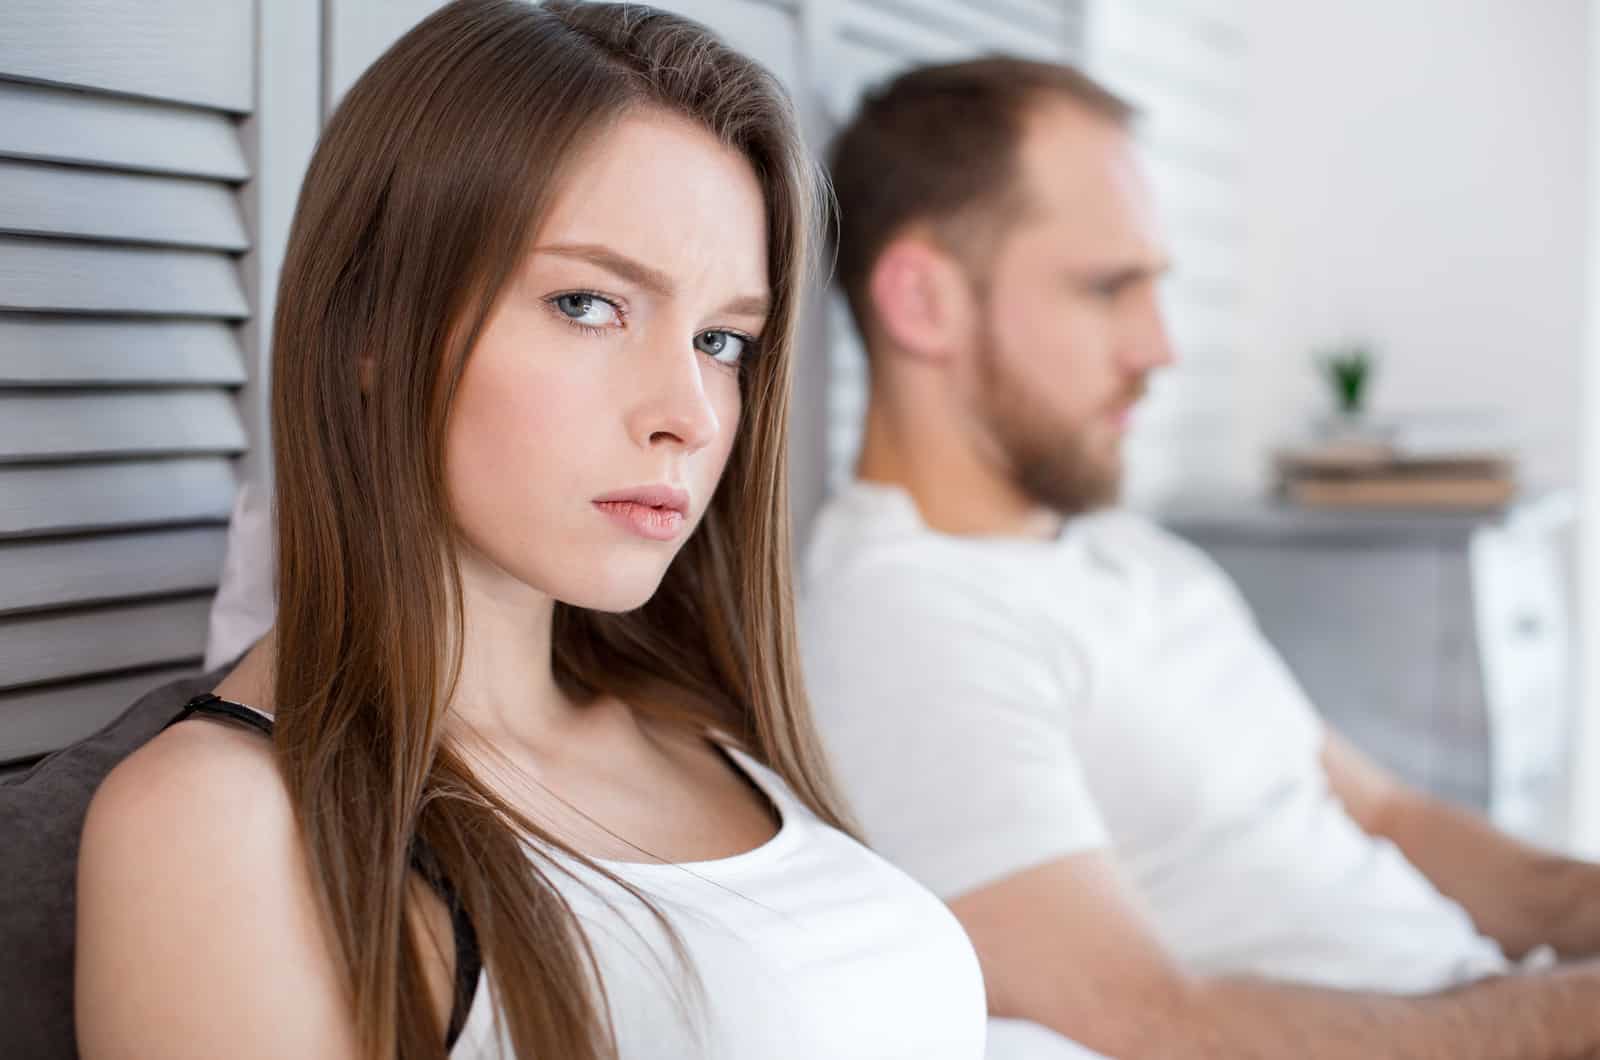 donna preoccupata che pensa mentre il suo ragazzo siede accanto a lei